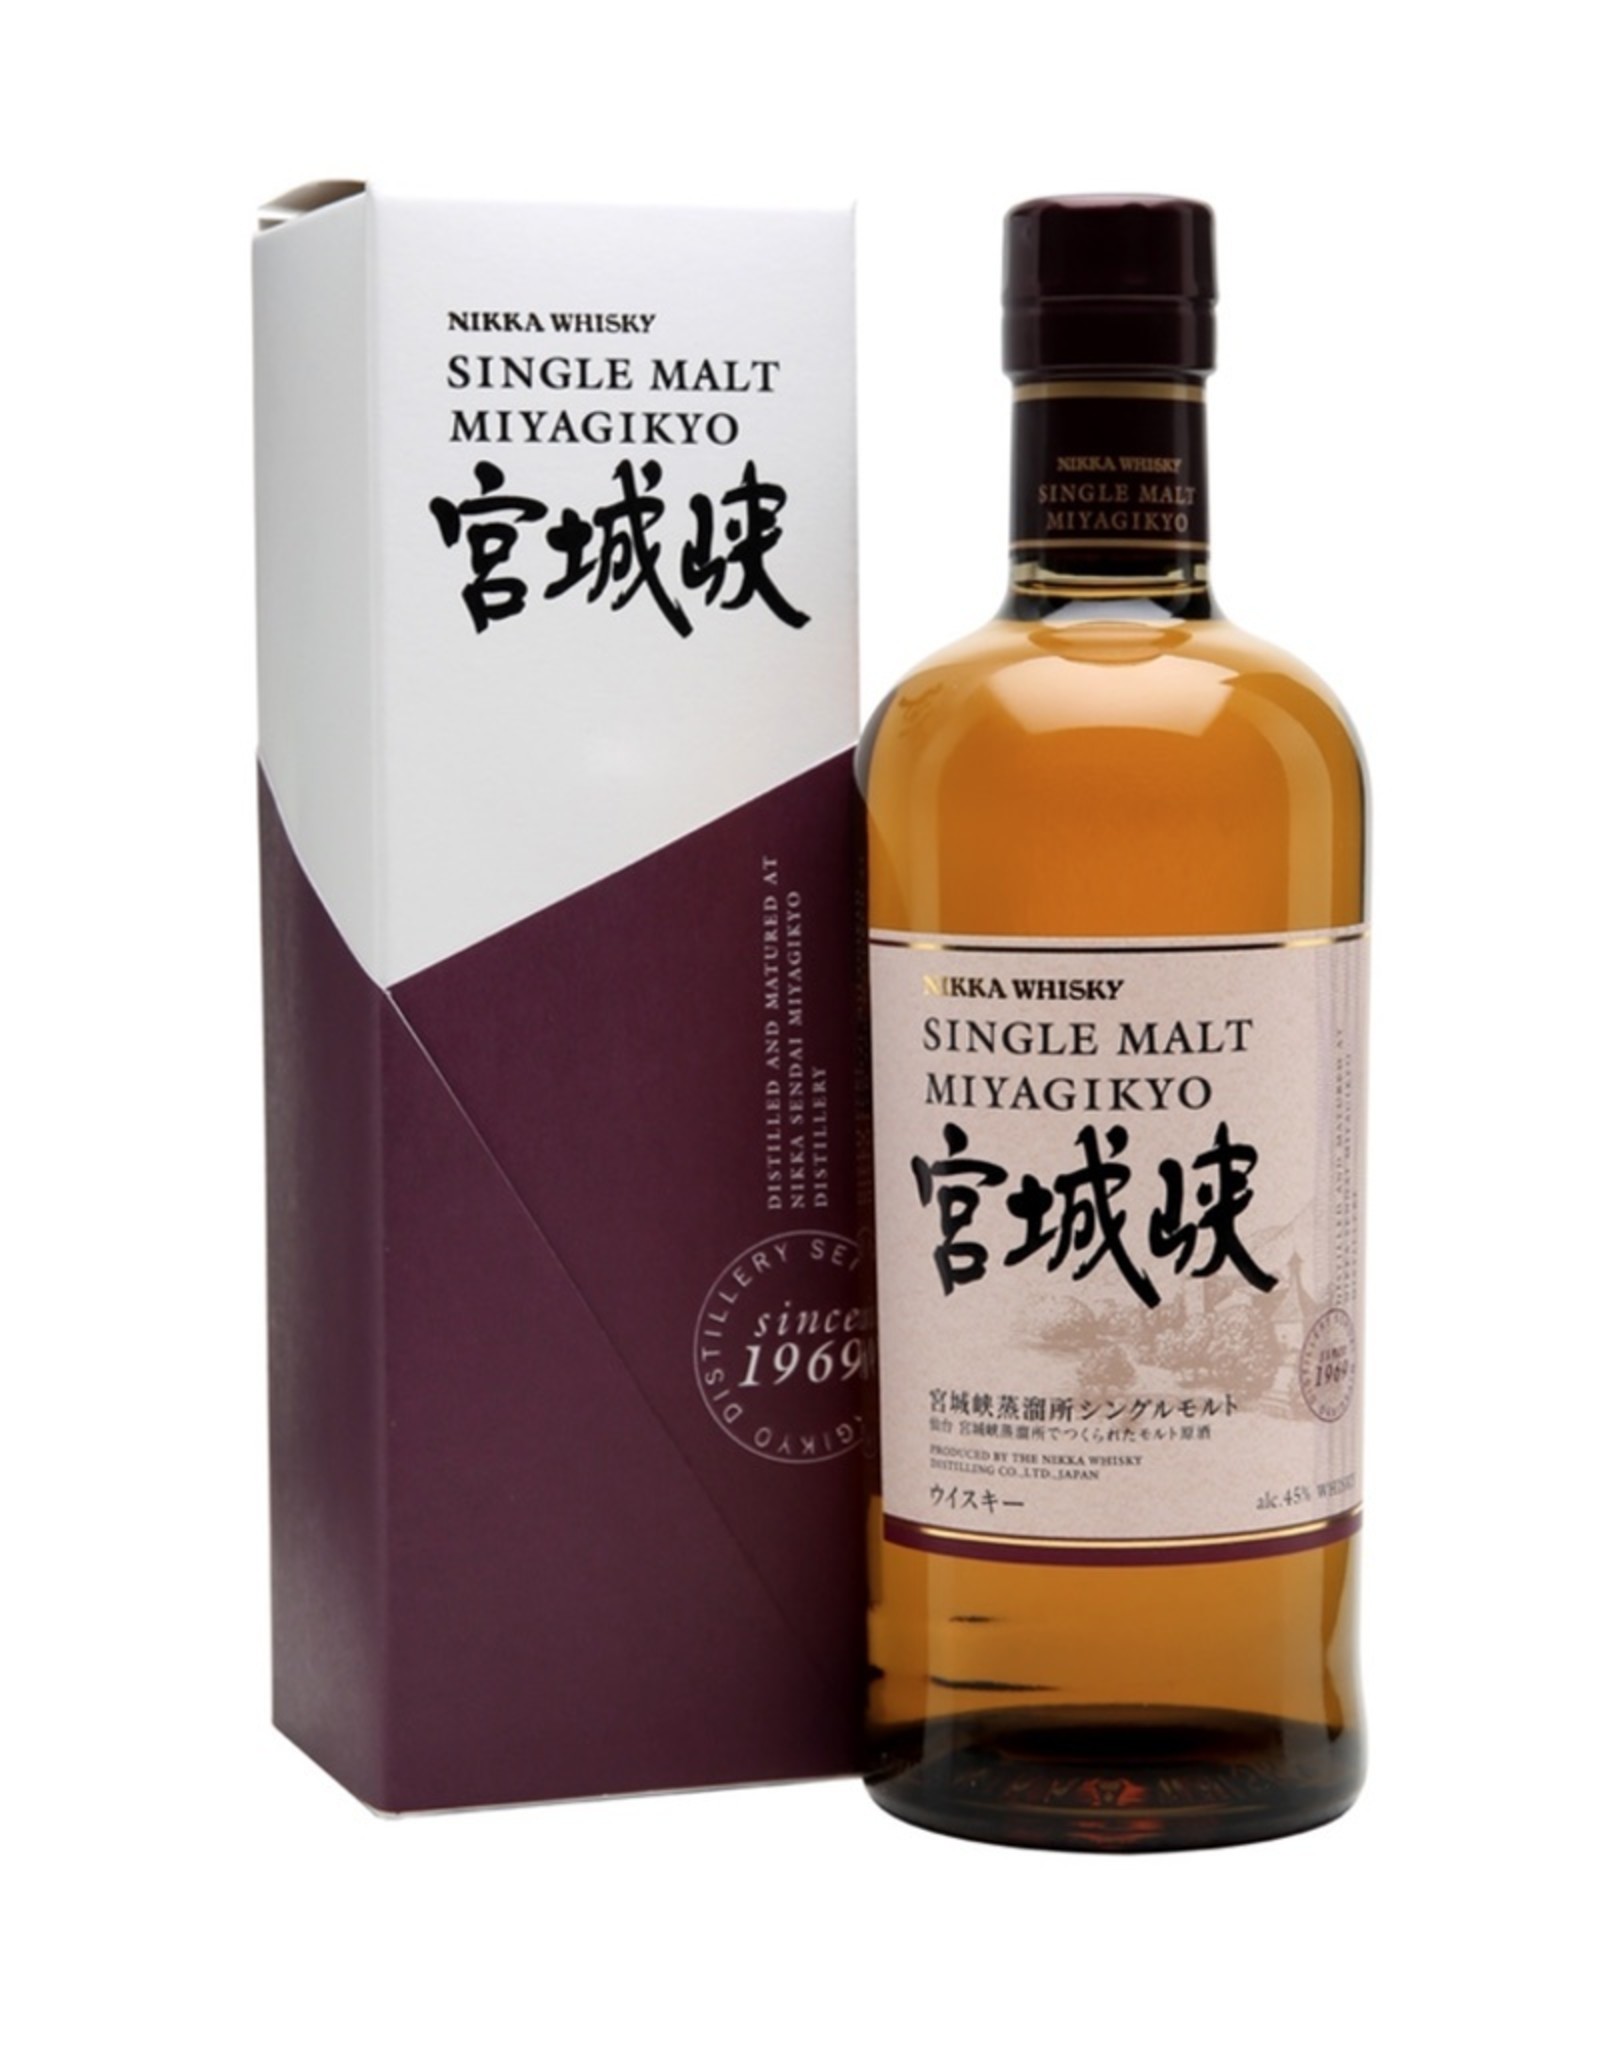 Nikka 'Miyagikyo' Single Malt Japanese Whisky, Japan - Bacchus